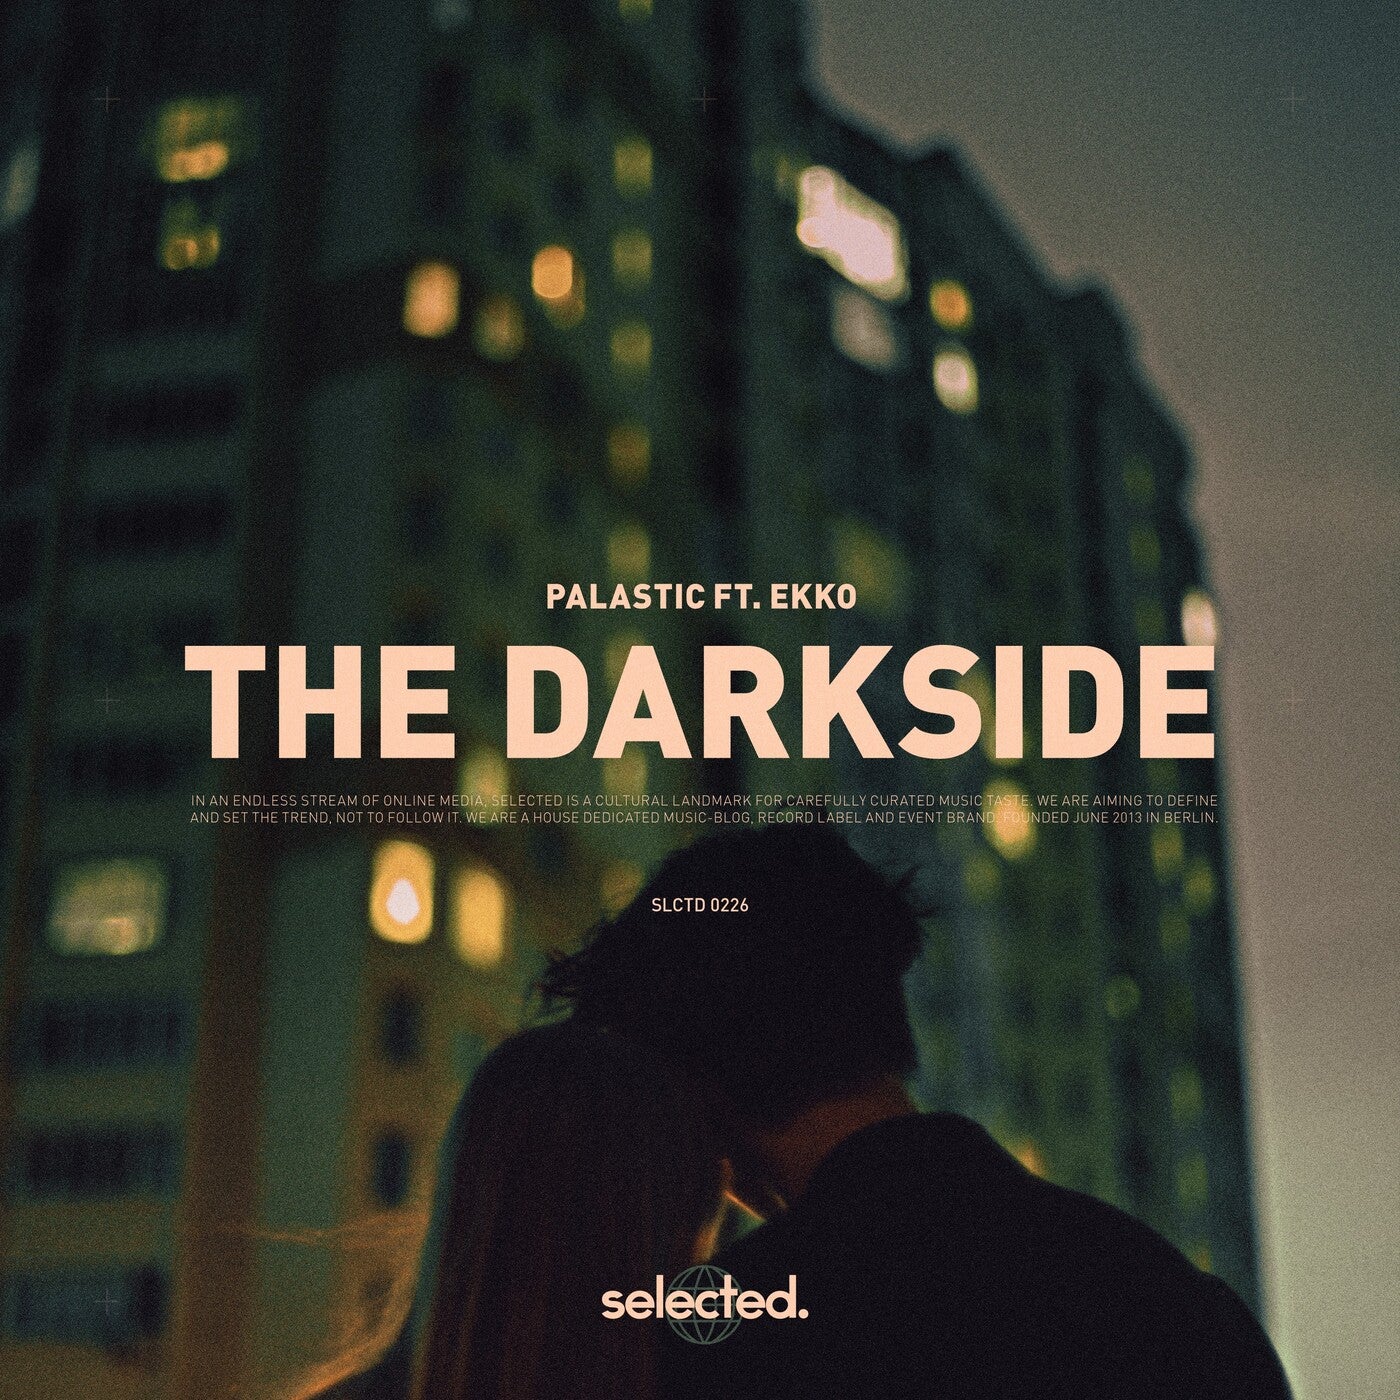 The Darkside